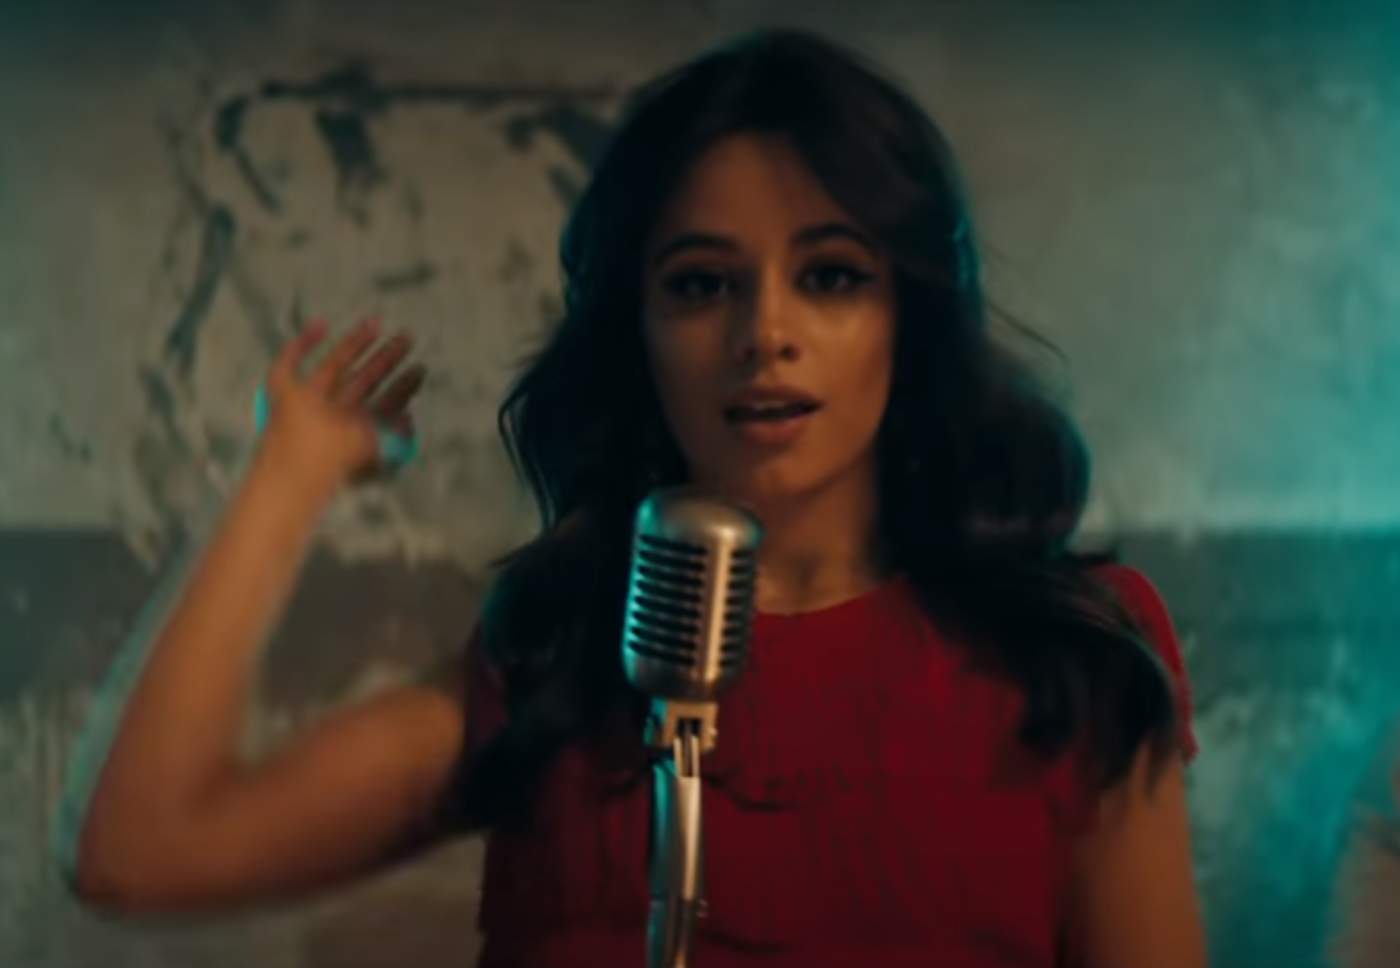 Havana de Camila Cabello se llevó el 2018 en descargas digitales